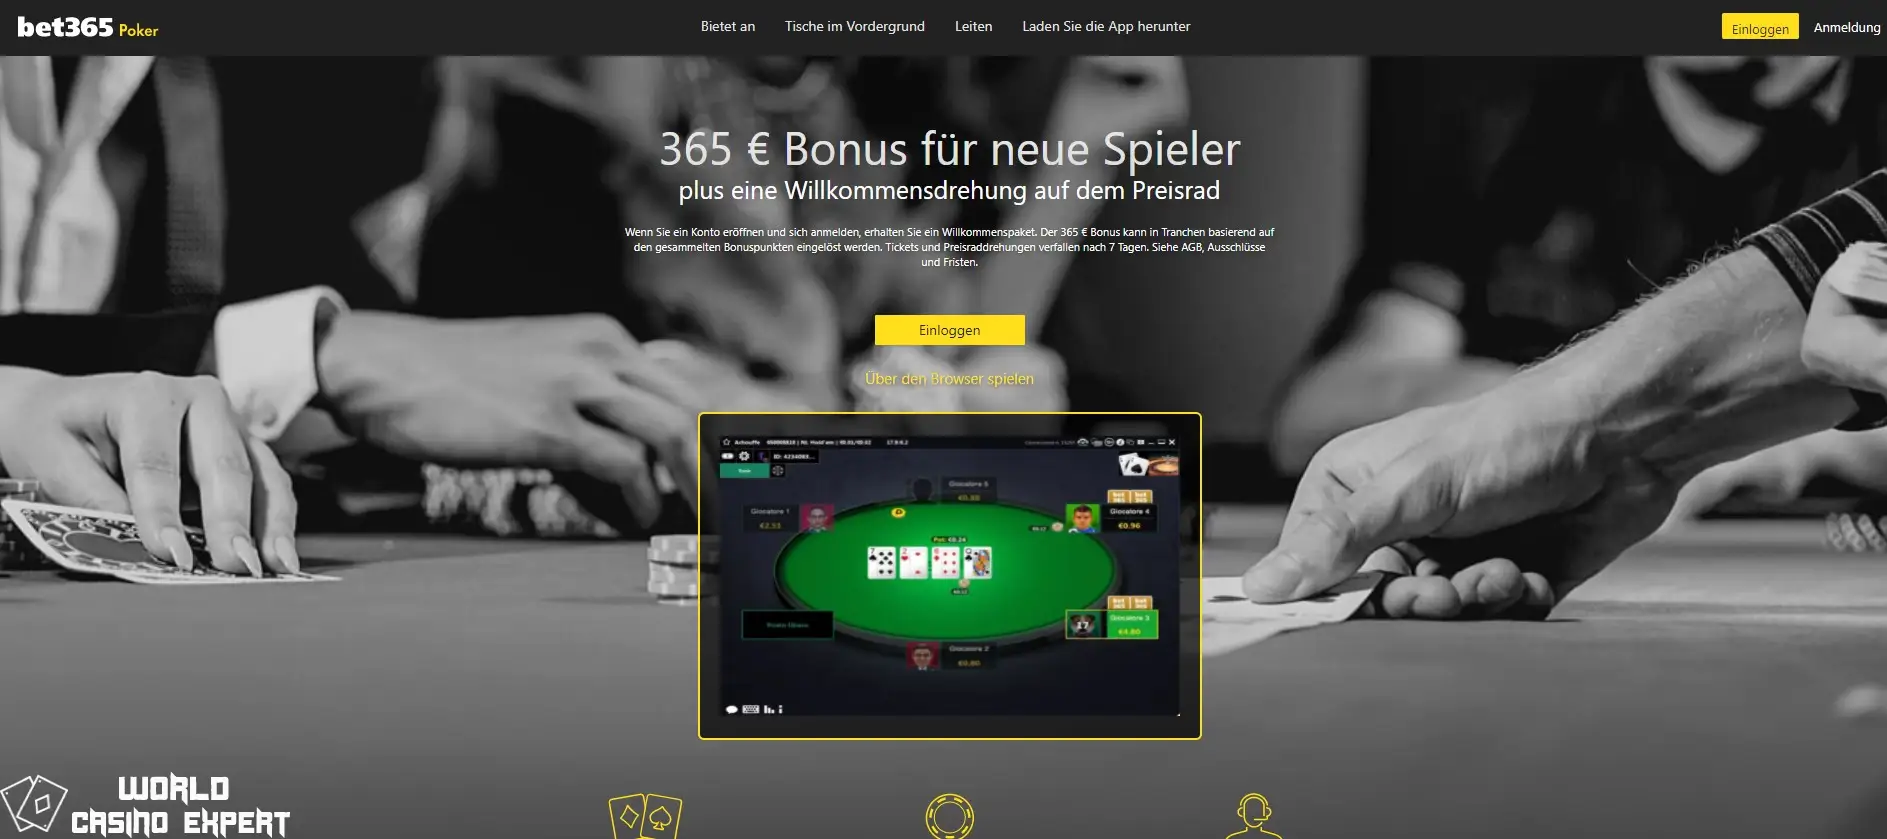 übersicht casino bet365 - 3 | World Casino Expert Germany